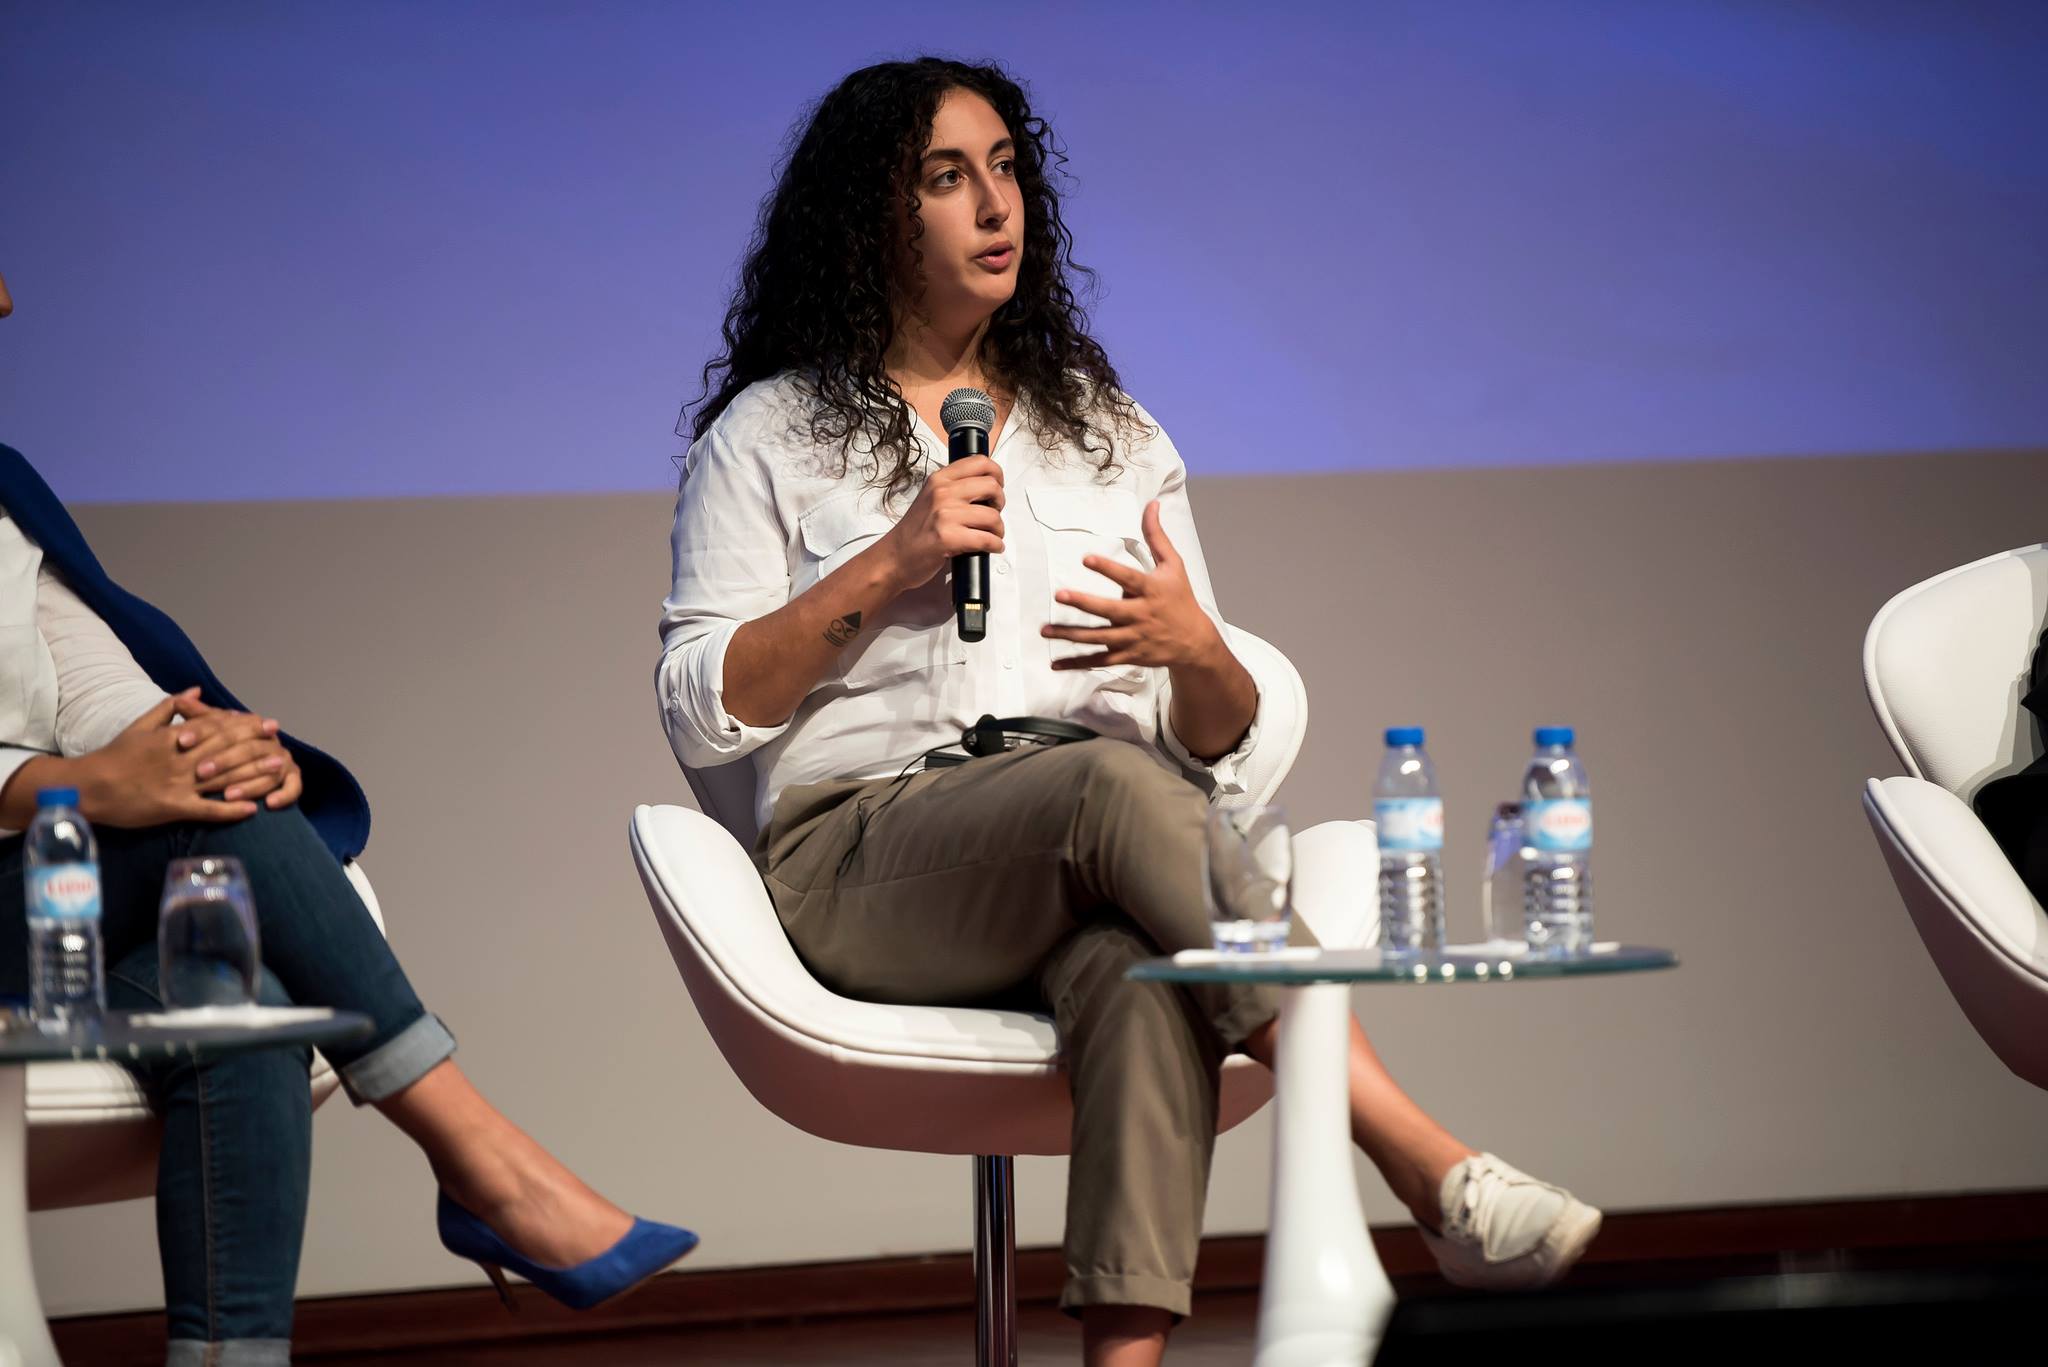 Carolina Pereira: “A ação humanitária não tem de ser 100% altruísta, mas temos de ser críticos em relação a ela”